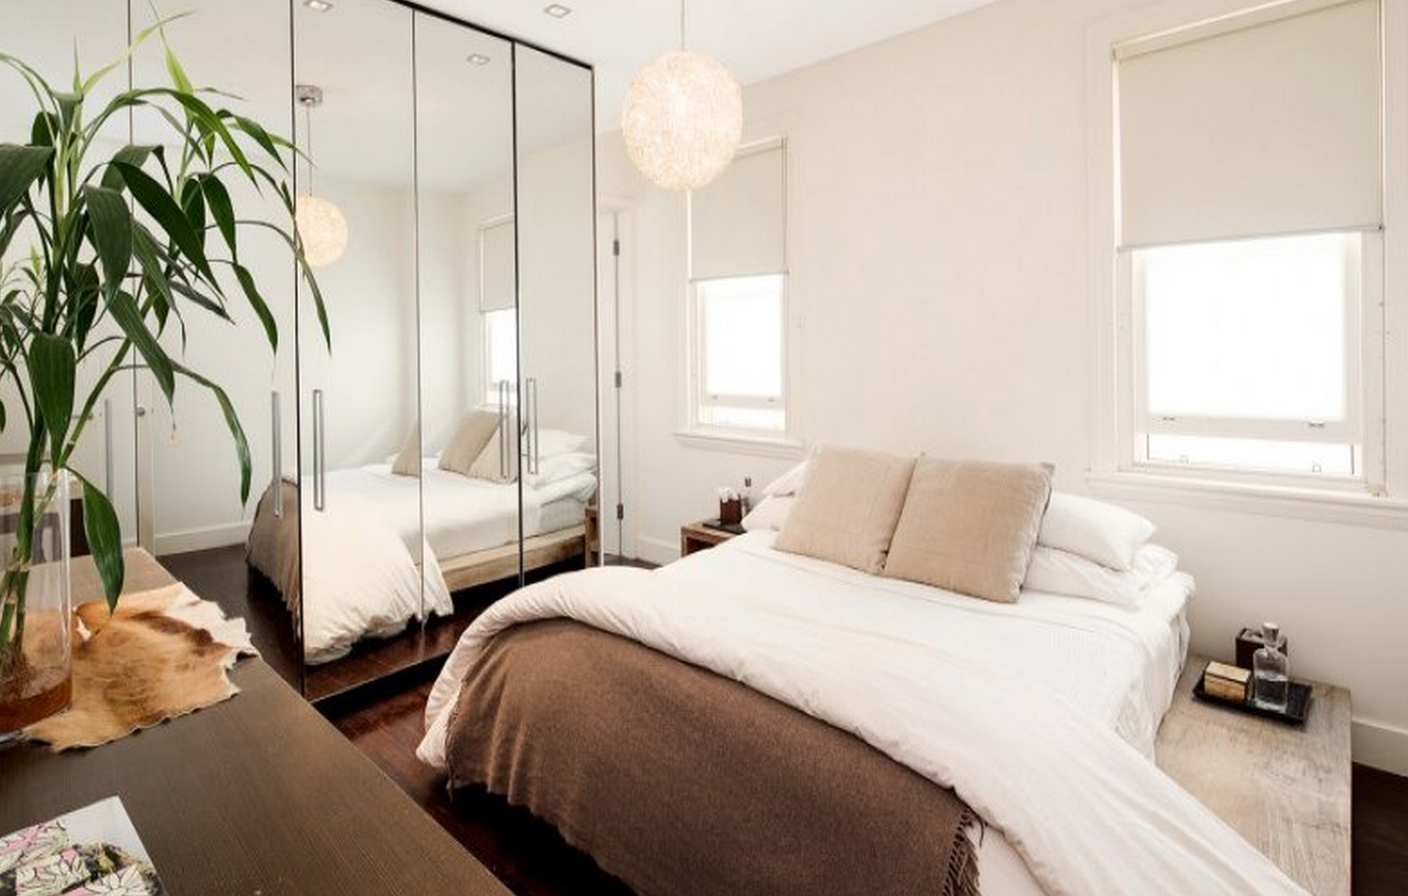 Những tấm gương cỡ lớn sẽ là cách đơn giản nhưng vô cùng hiệu quả để khuếch đại không gian căn phòng của bạn